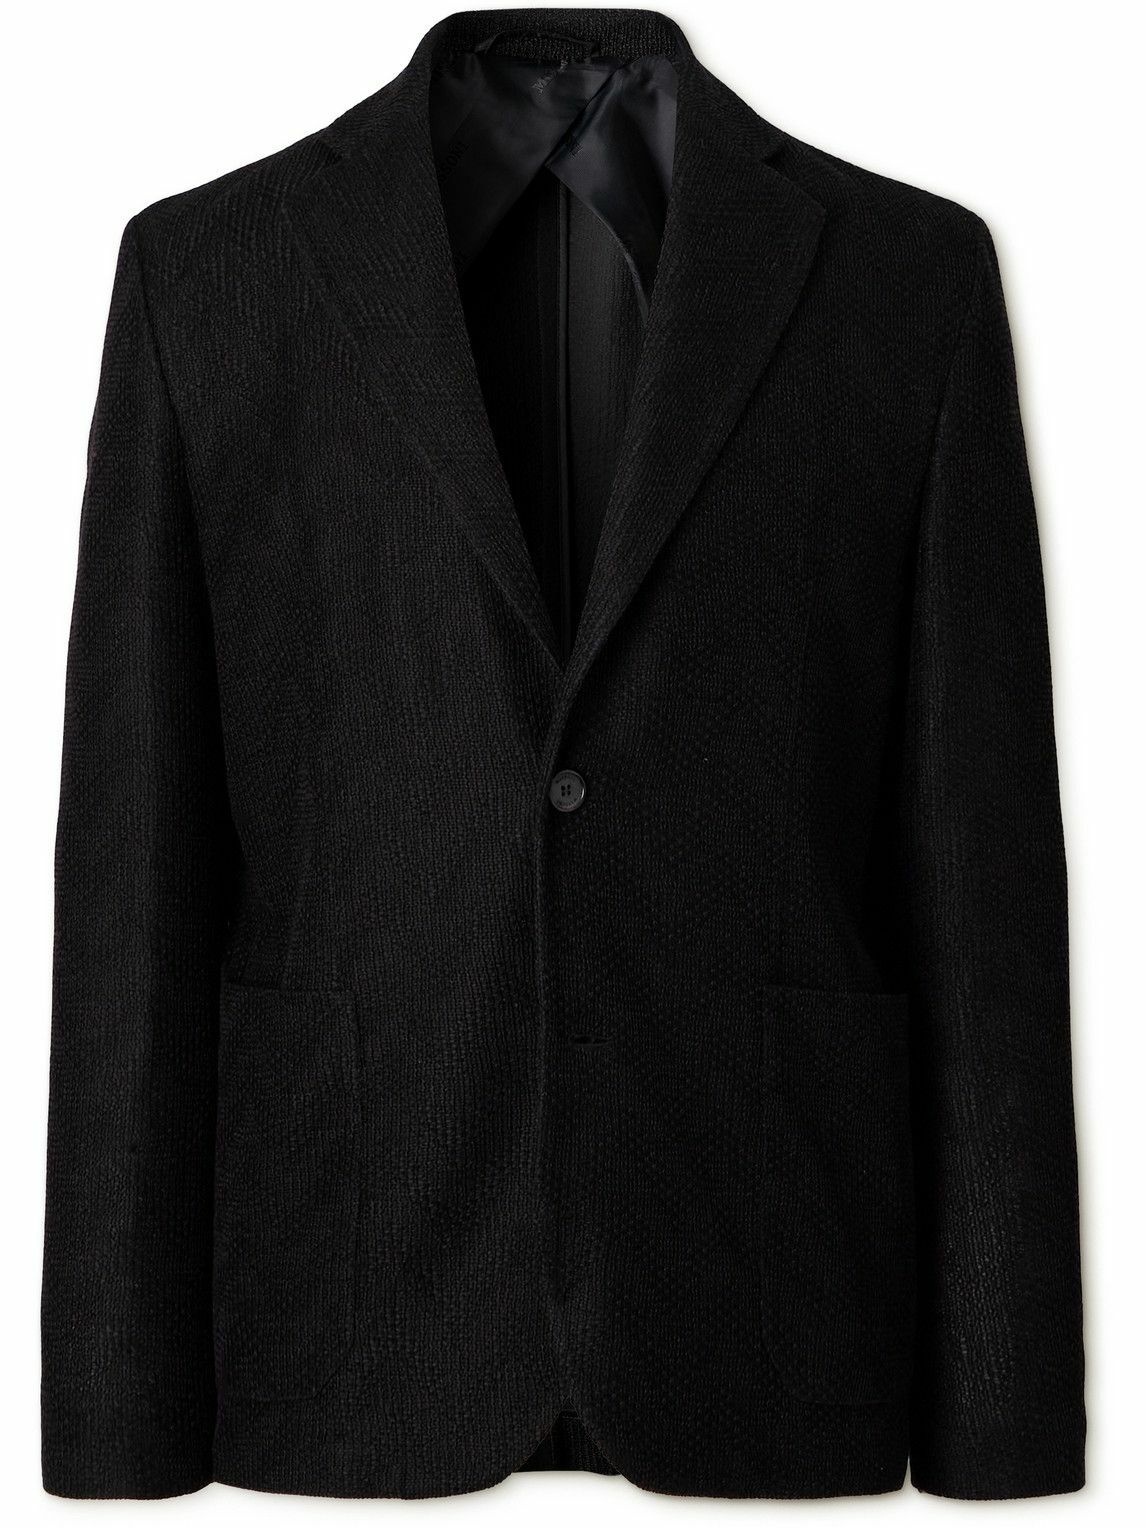 Photo: Missoni - Silm-Fit Chevron-Jacquard Cotton Suit Jacket - Black